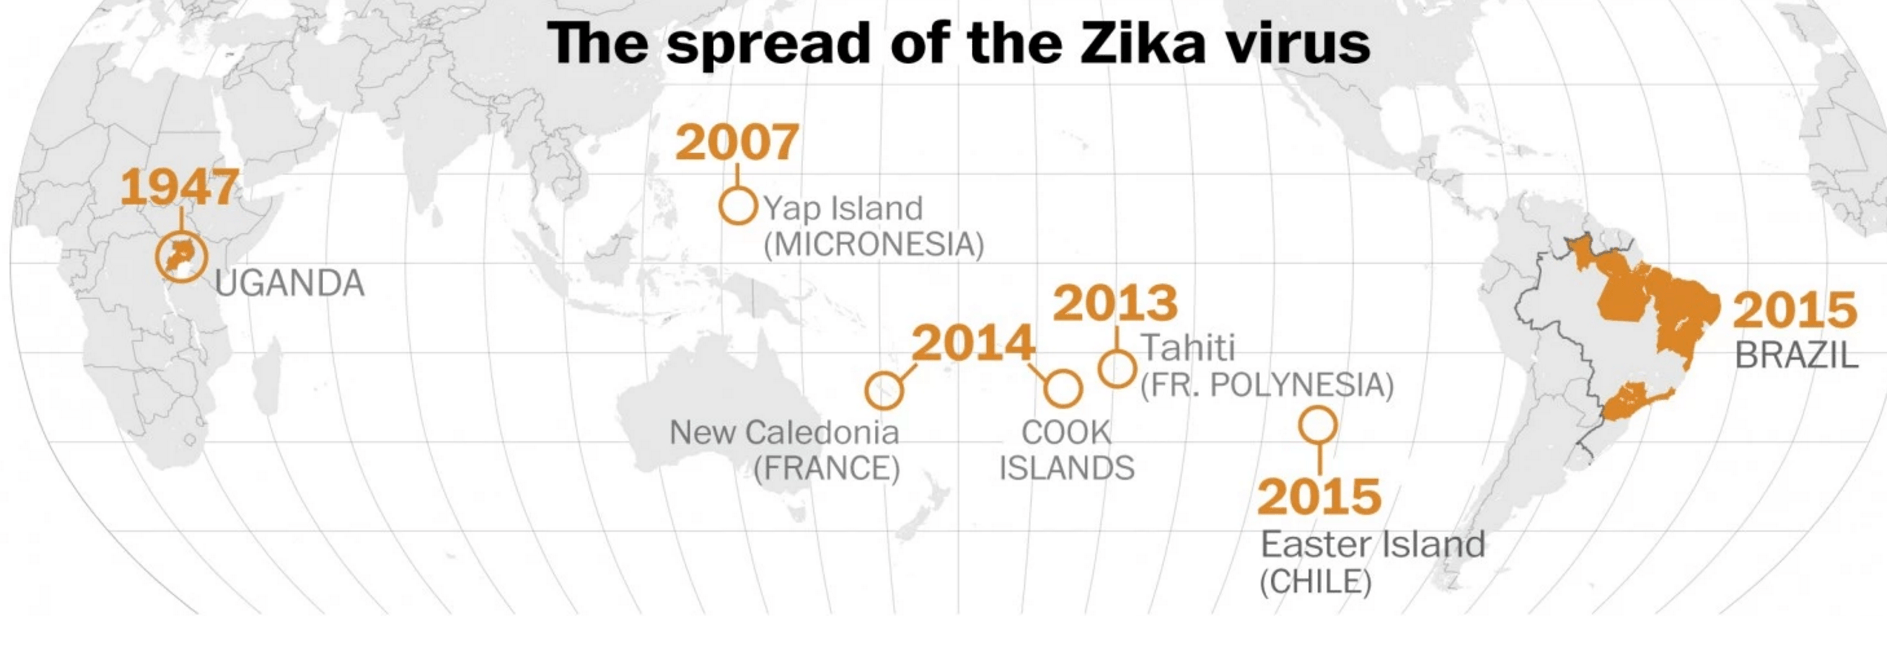 zika virus history